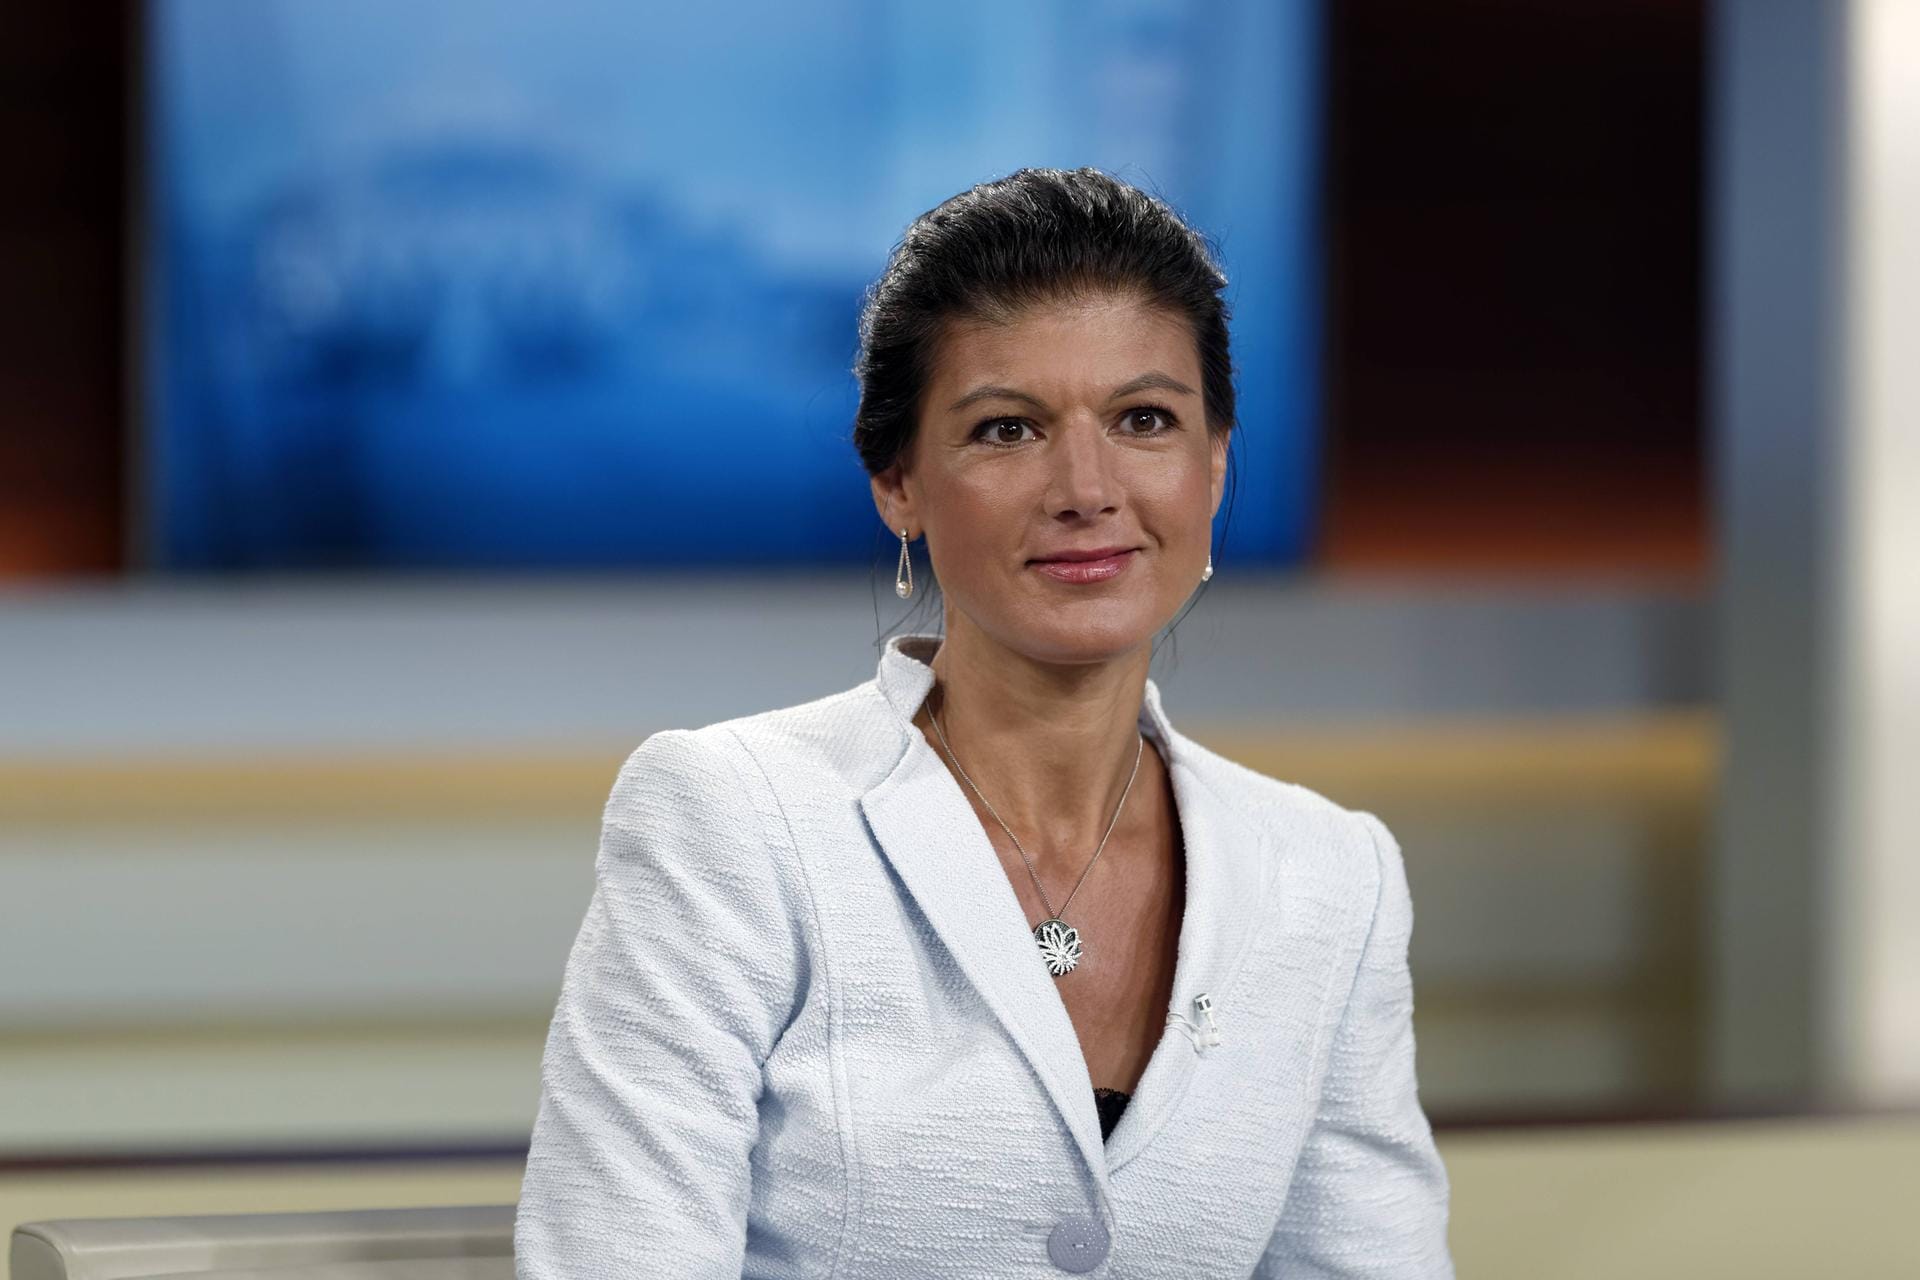 Sahra Wagenknecht 2017-08-27, Berlin, Deutschland - Sahra Wagenknecht (Die Linke), Fraktionsvorsitzende im Bundestag, zu Gast bei Anne Will.